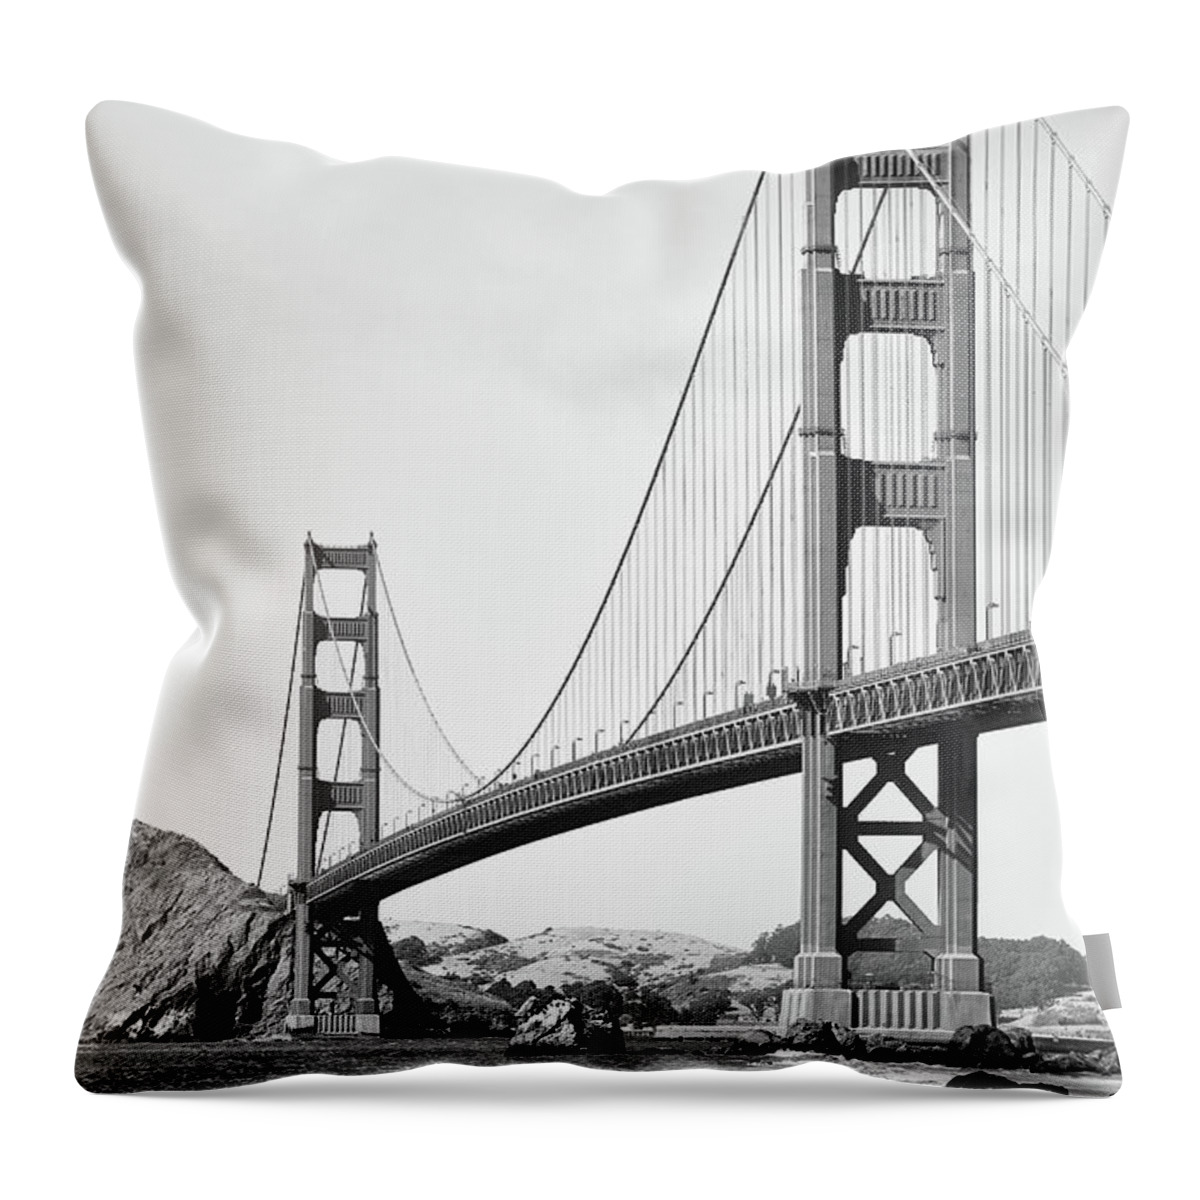 Architecture Throw Pillow featuring the photograph Golden Gate Bridge from Baker Beach 2 by Dean Birinyi